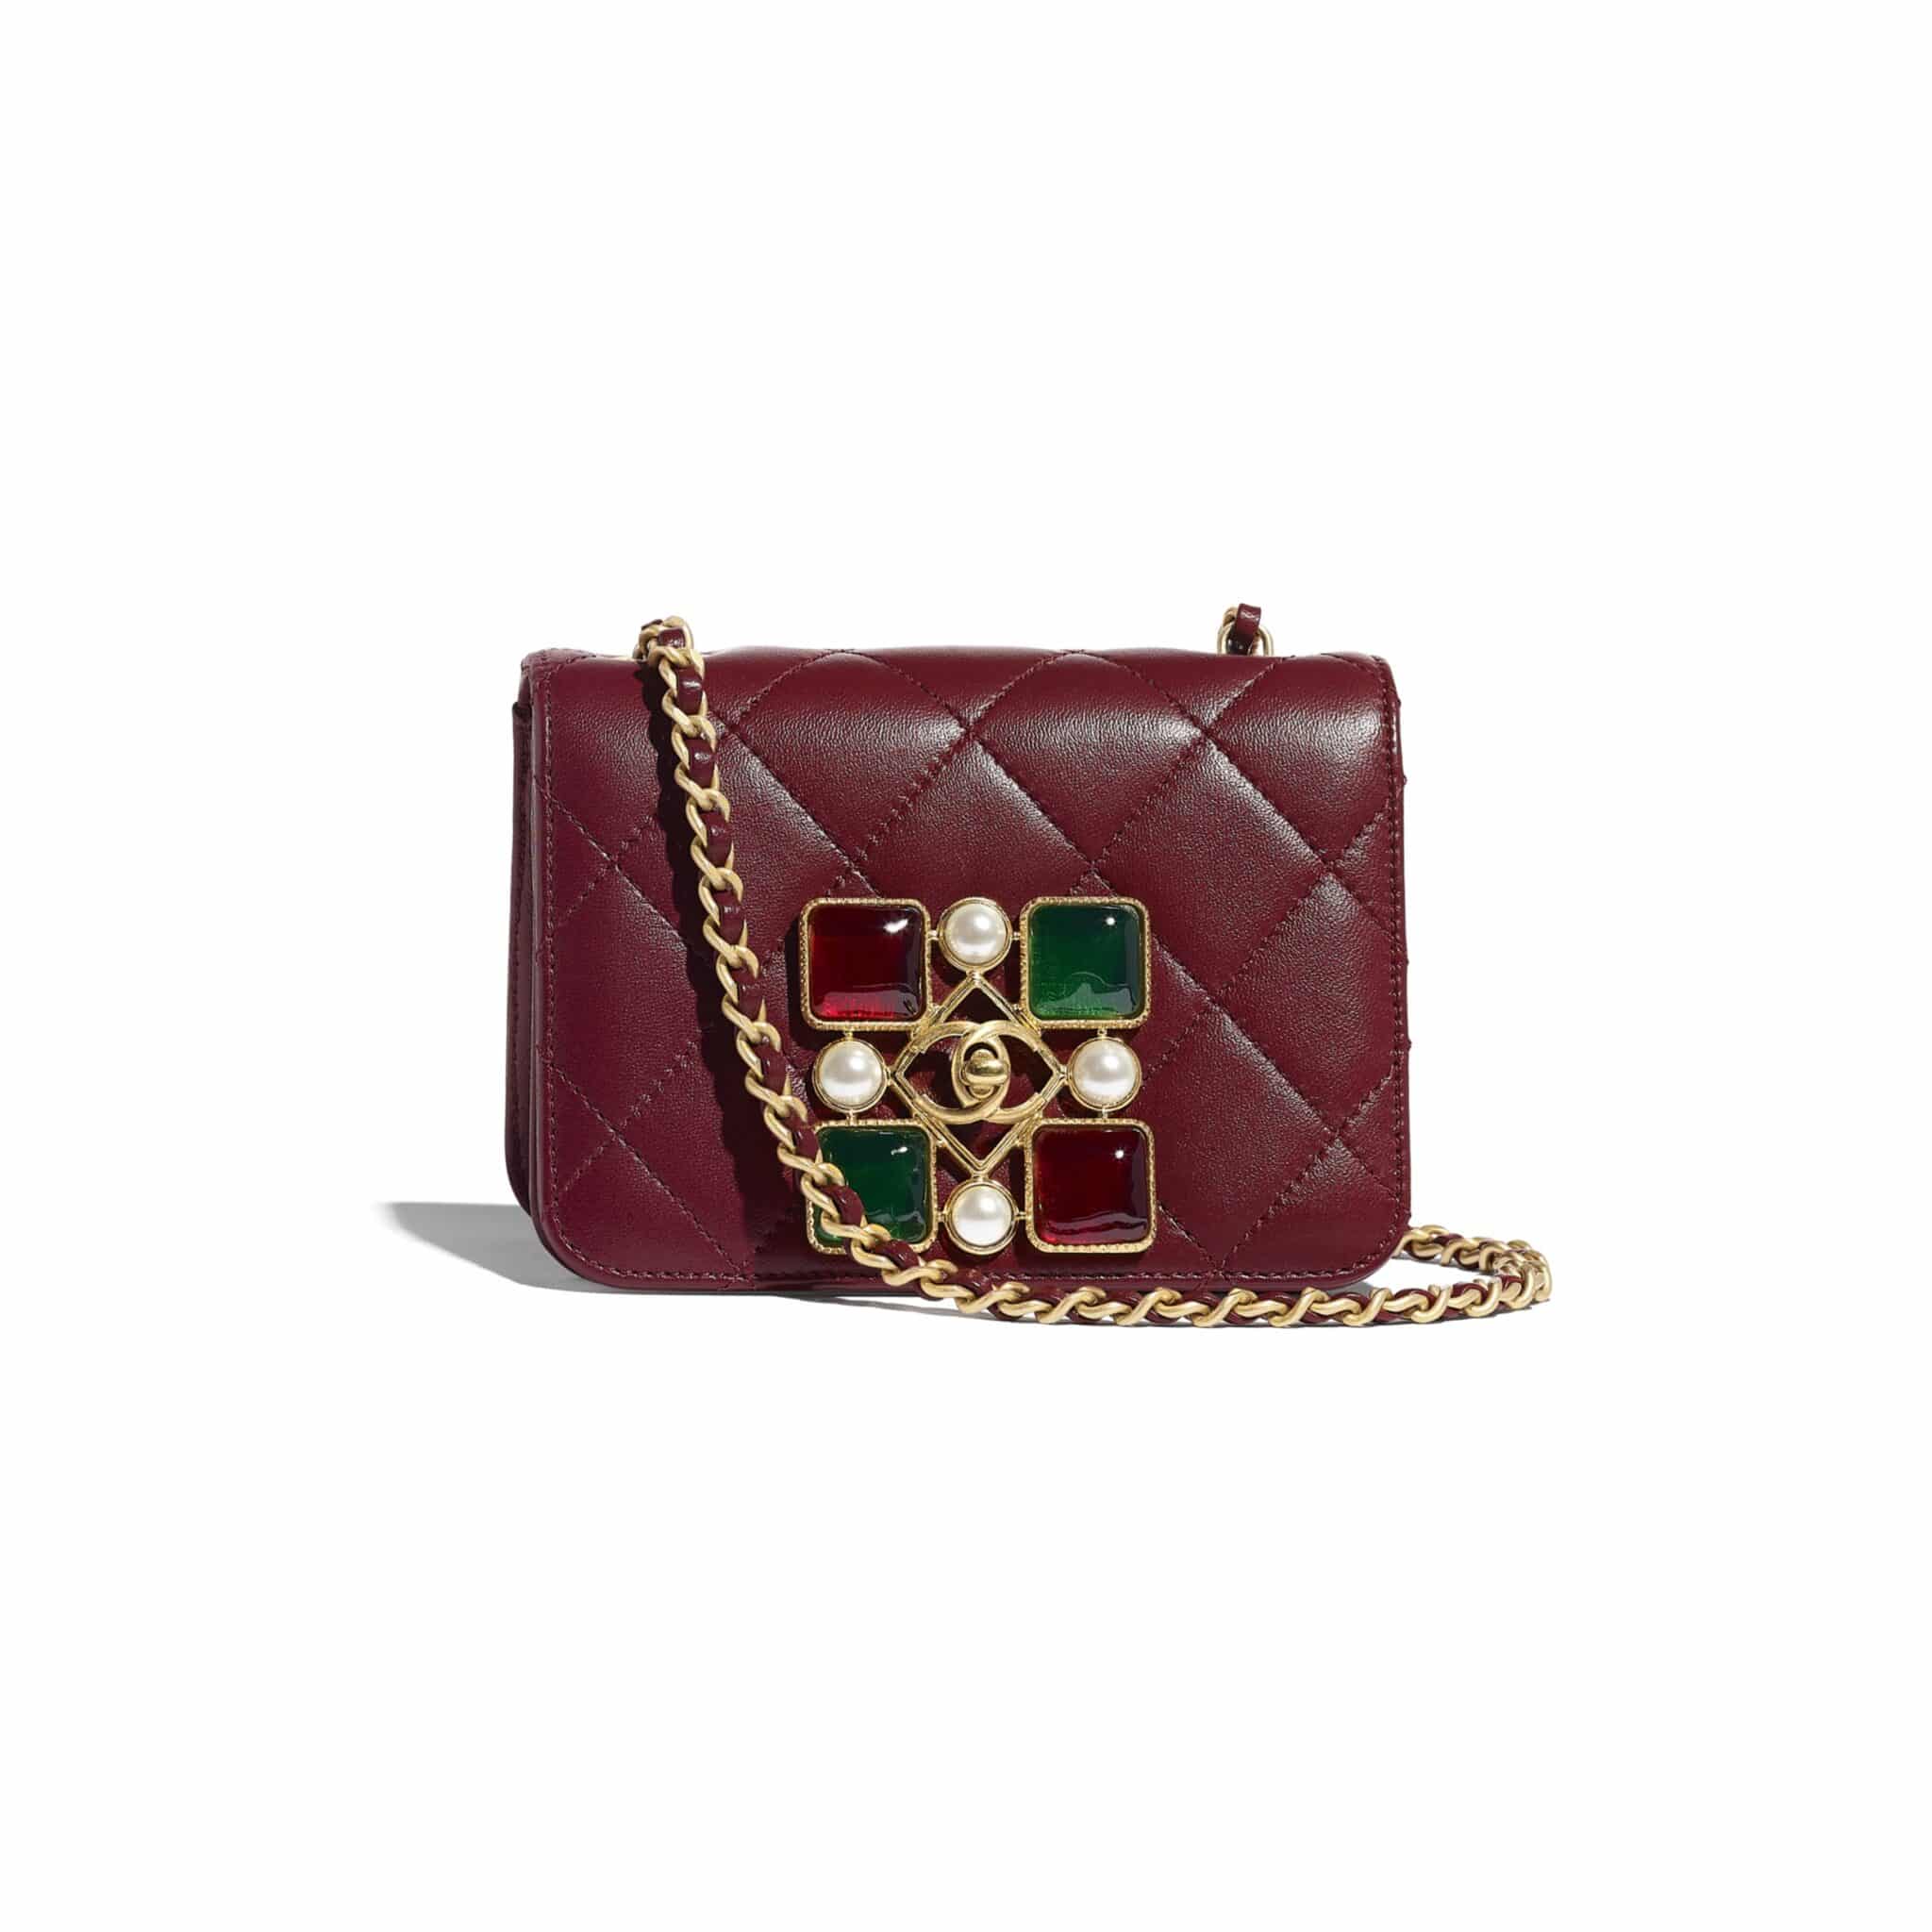 Coco Chanel Handbags - Etsy UK